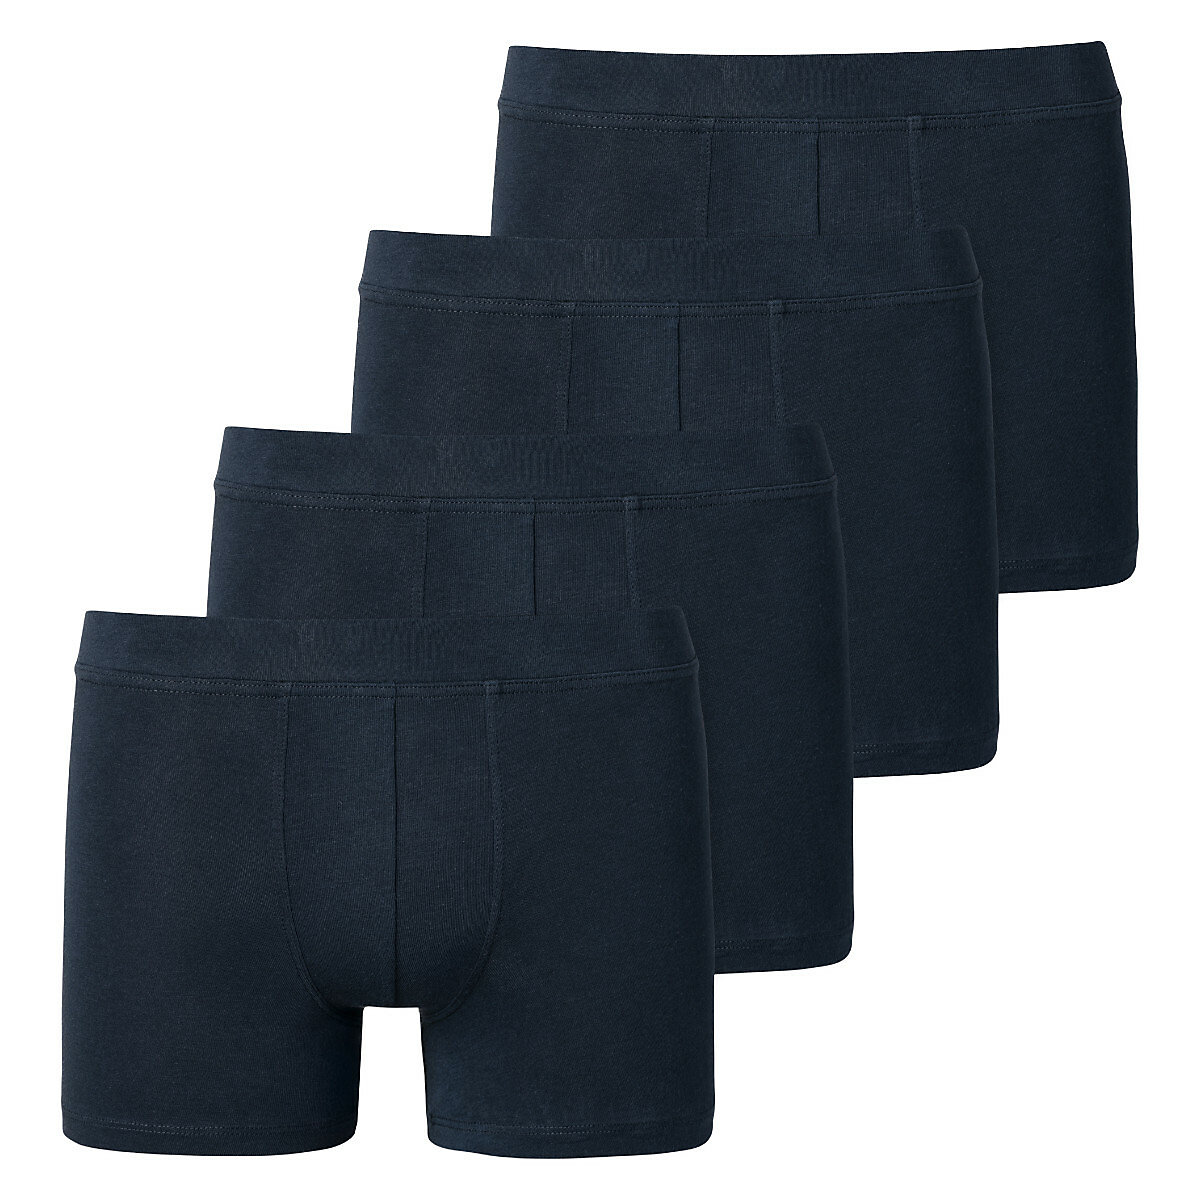 SCHIESSER Shorts / Pants 4er Pack Teens Boys 95/5 Organic Cotton Panties für Jungen dunkelblau